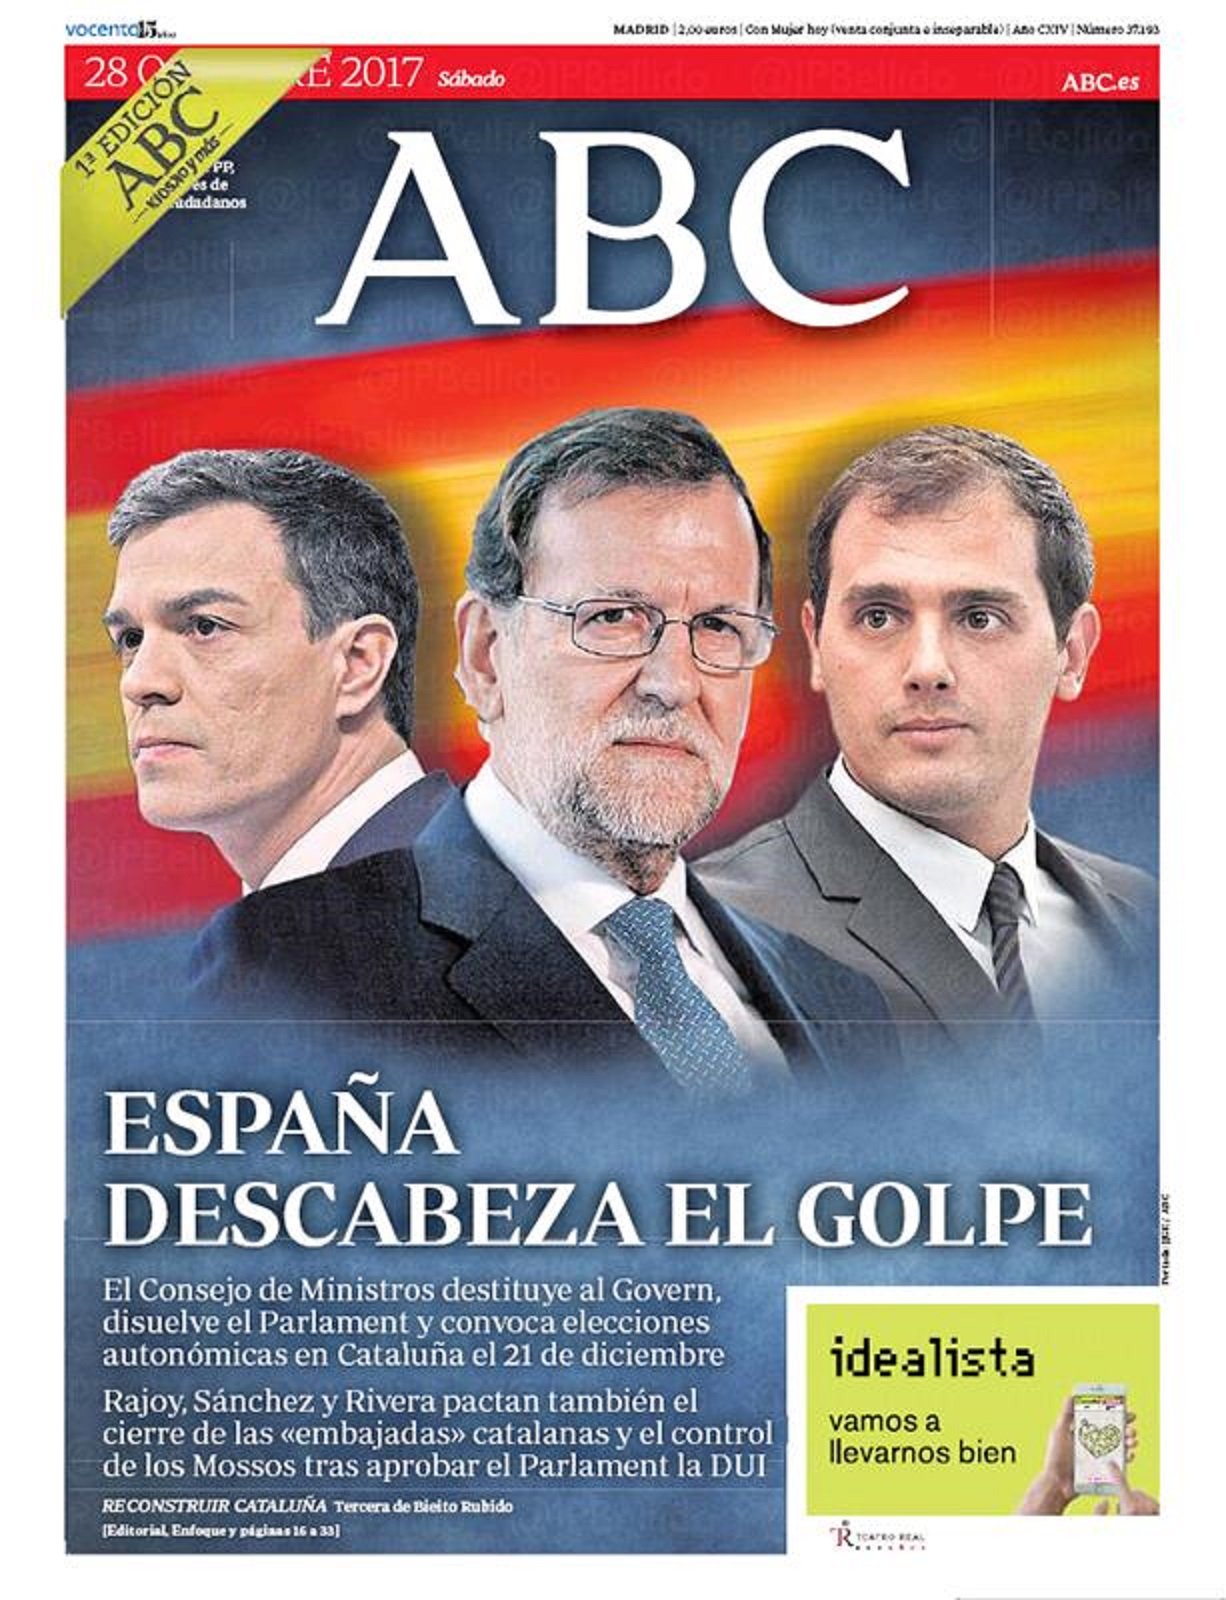 Els diaris de Madrid ovacionen Rajoy i l'animen a utilitzar la força